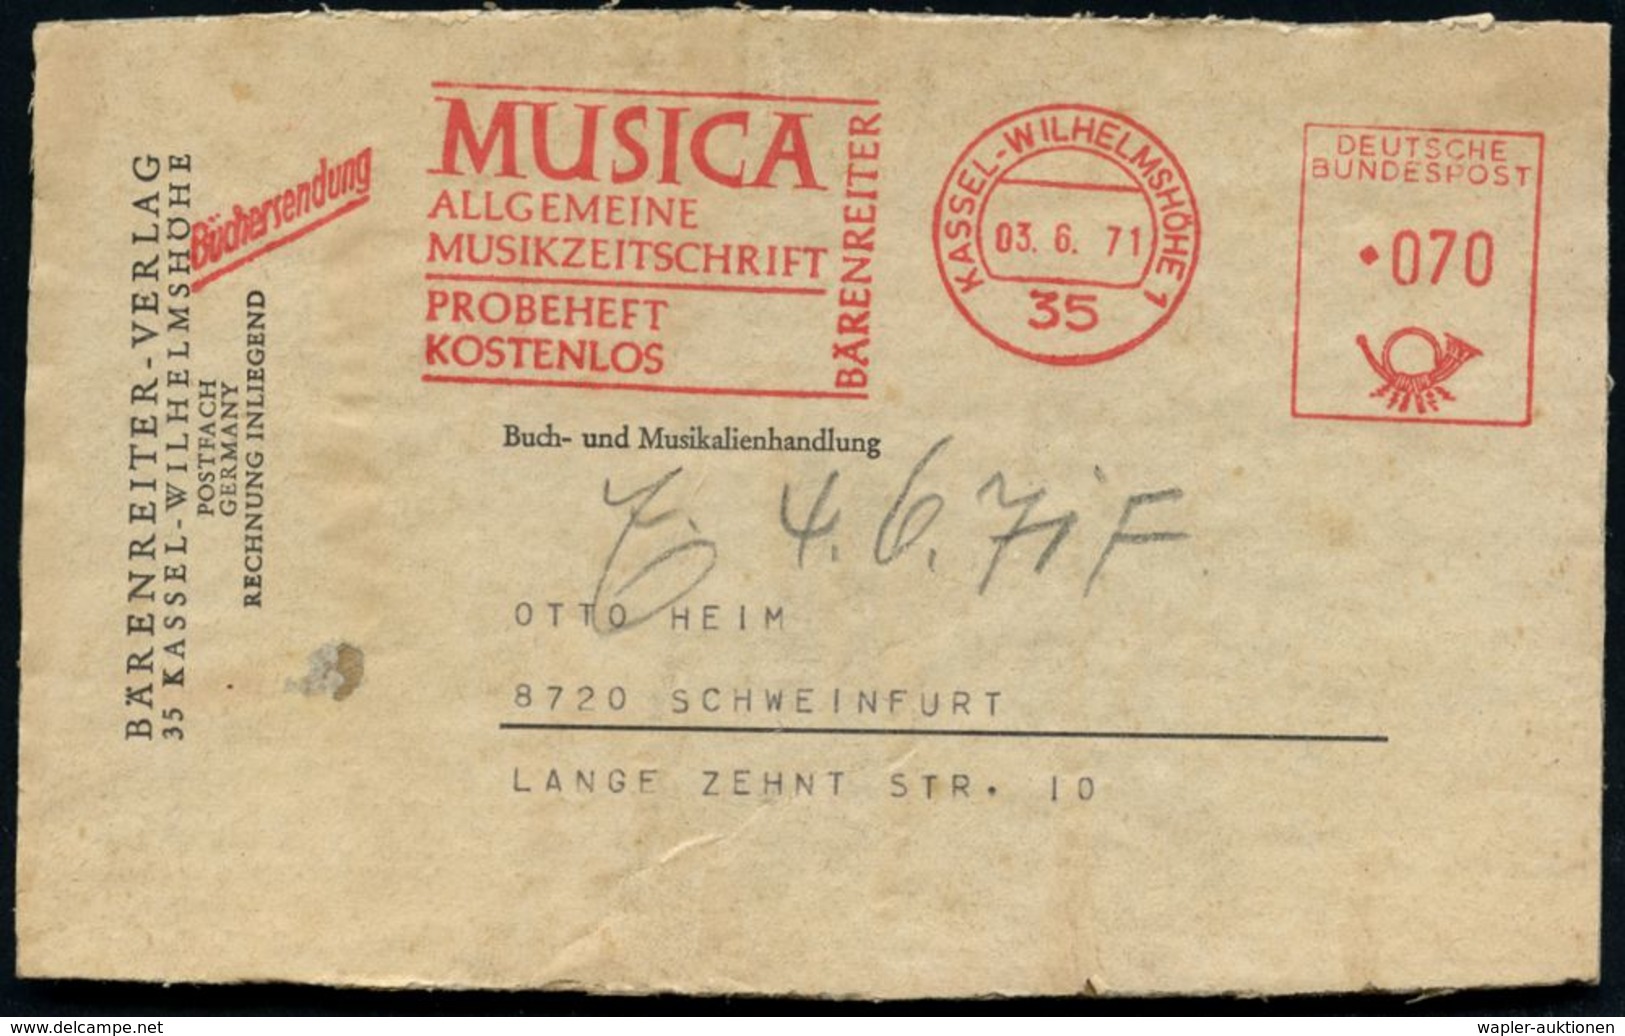 35 KASSEL-WILHELMSHÖHE 1/ MUSICA/ ALLGEM./ MUSIKZEITSCHRIFT../ BÄRENREITER 1971 (3.6.) AFS 070 Pf. + Zusatz "Büchersendu - Musica